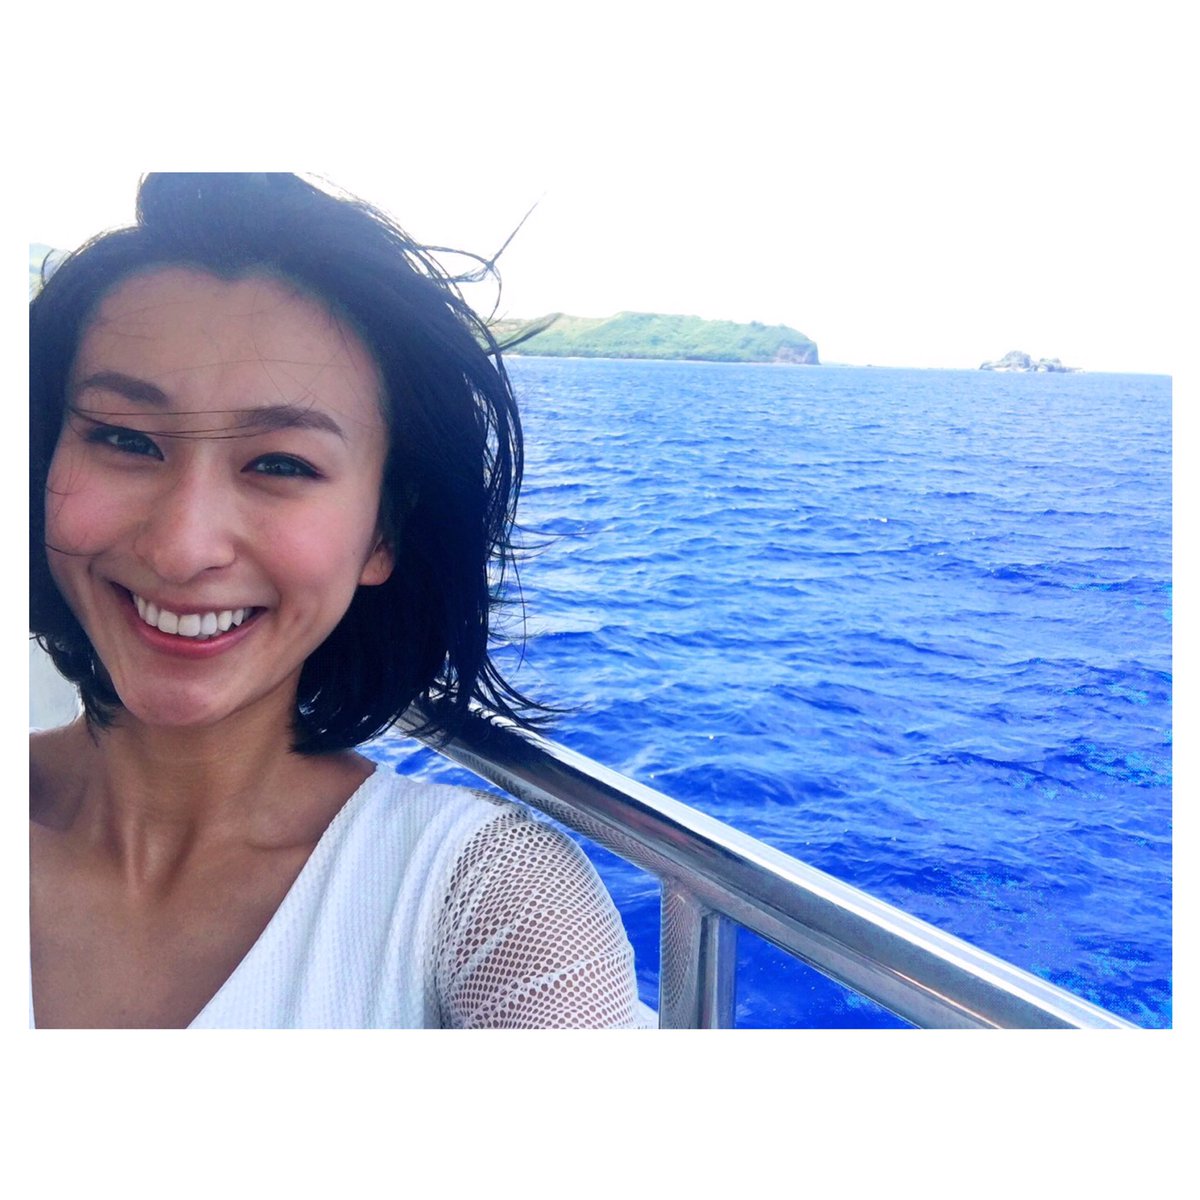 ロイヤルブルーの海のなかクルージングを楽しむ浅田舞さん。きれいなお顔のなかでひときわ目が行くのはきれいすぎる歯です。